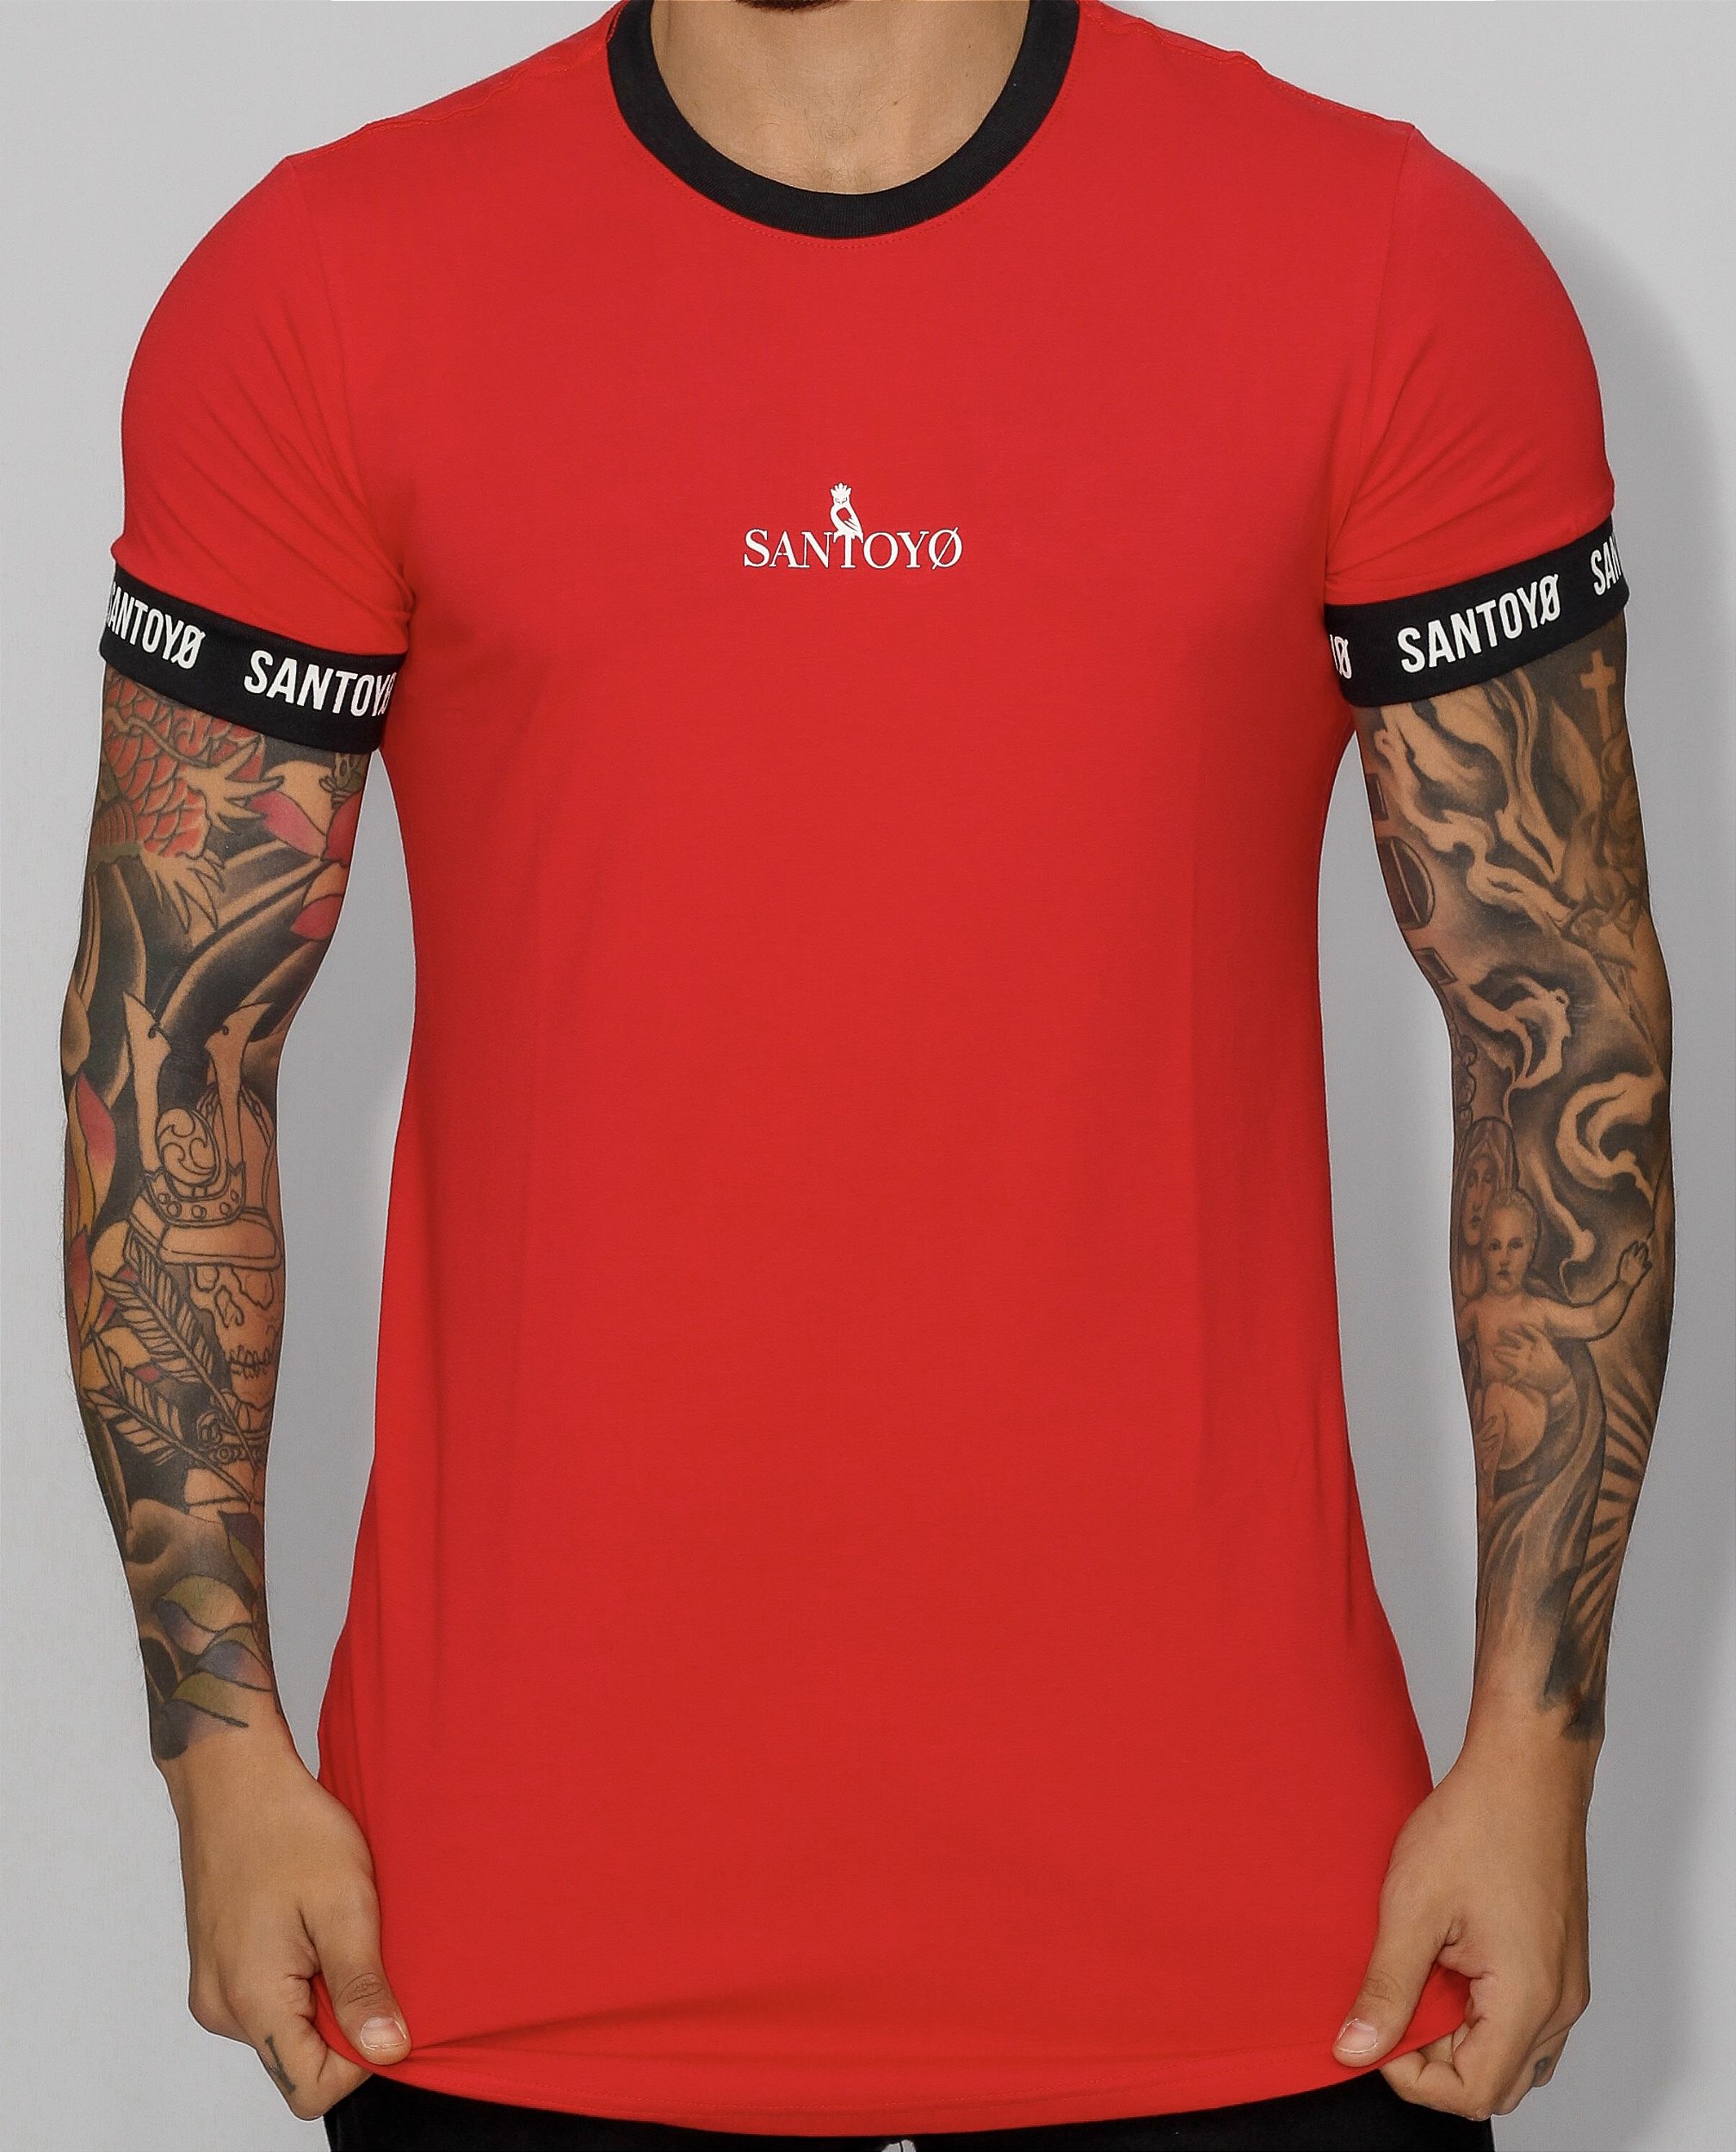 Camiseta Masculina Oneil Manga Curta Estampada - Vermelho - Home